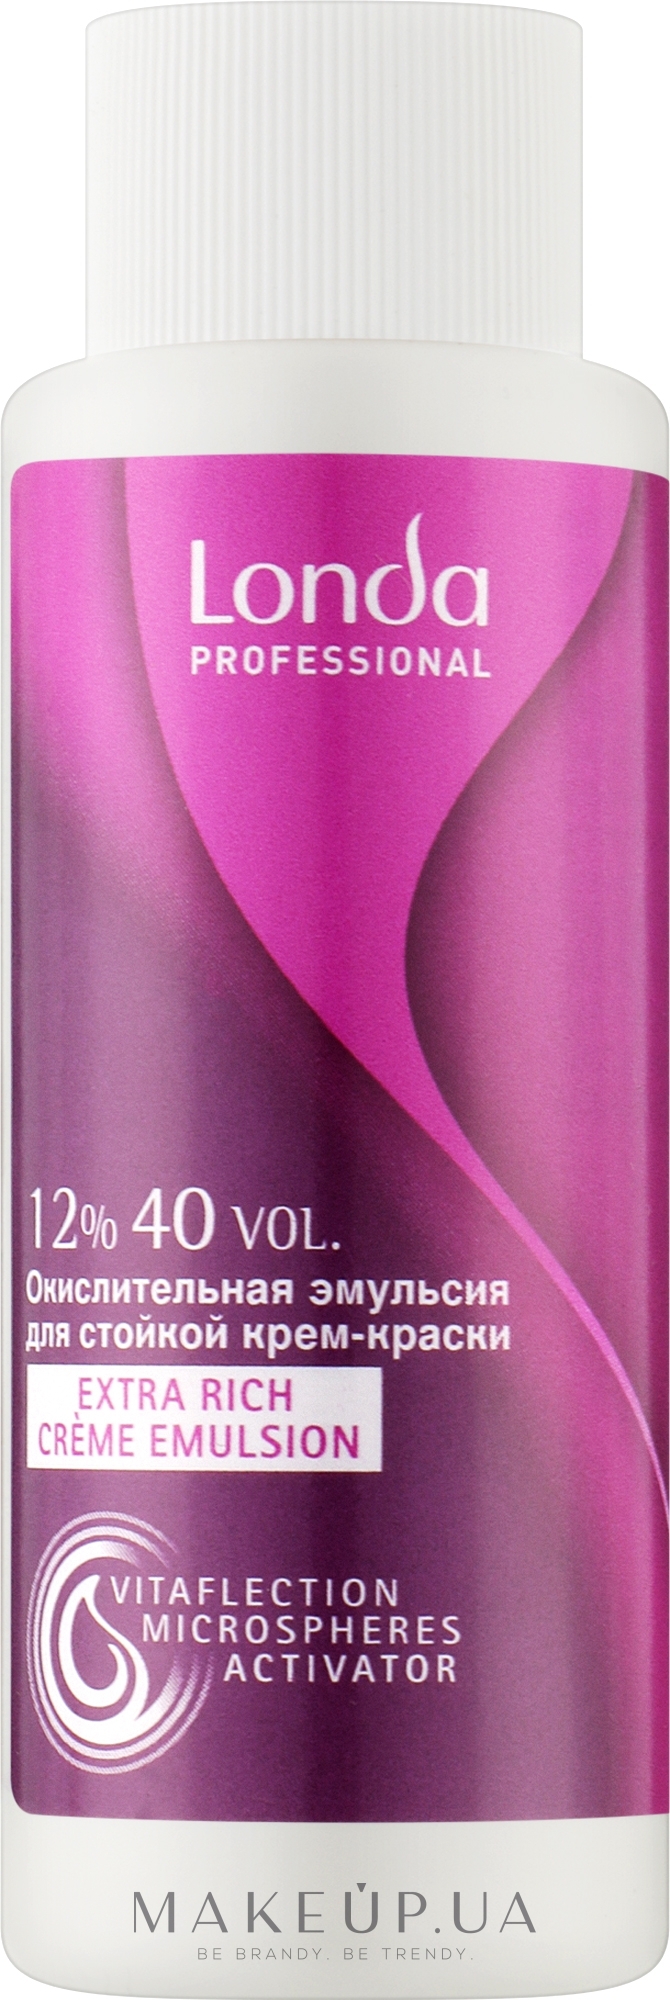 Londa Professional Londacolor Permanent - Стойкая крем-краска для волос | webmaster-korolev.ru